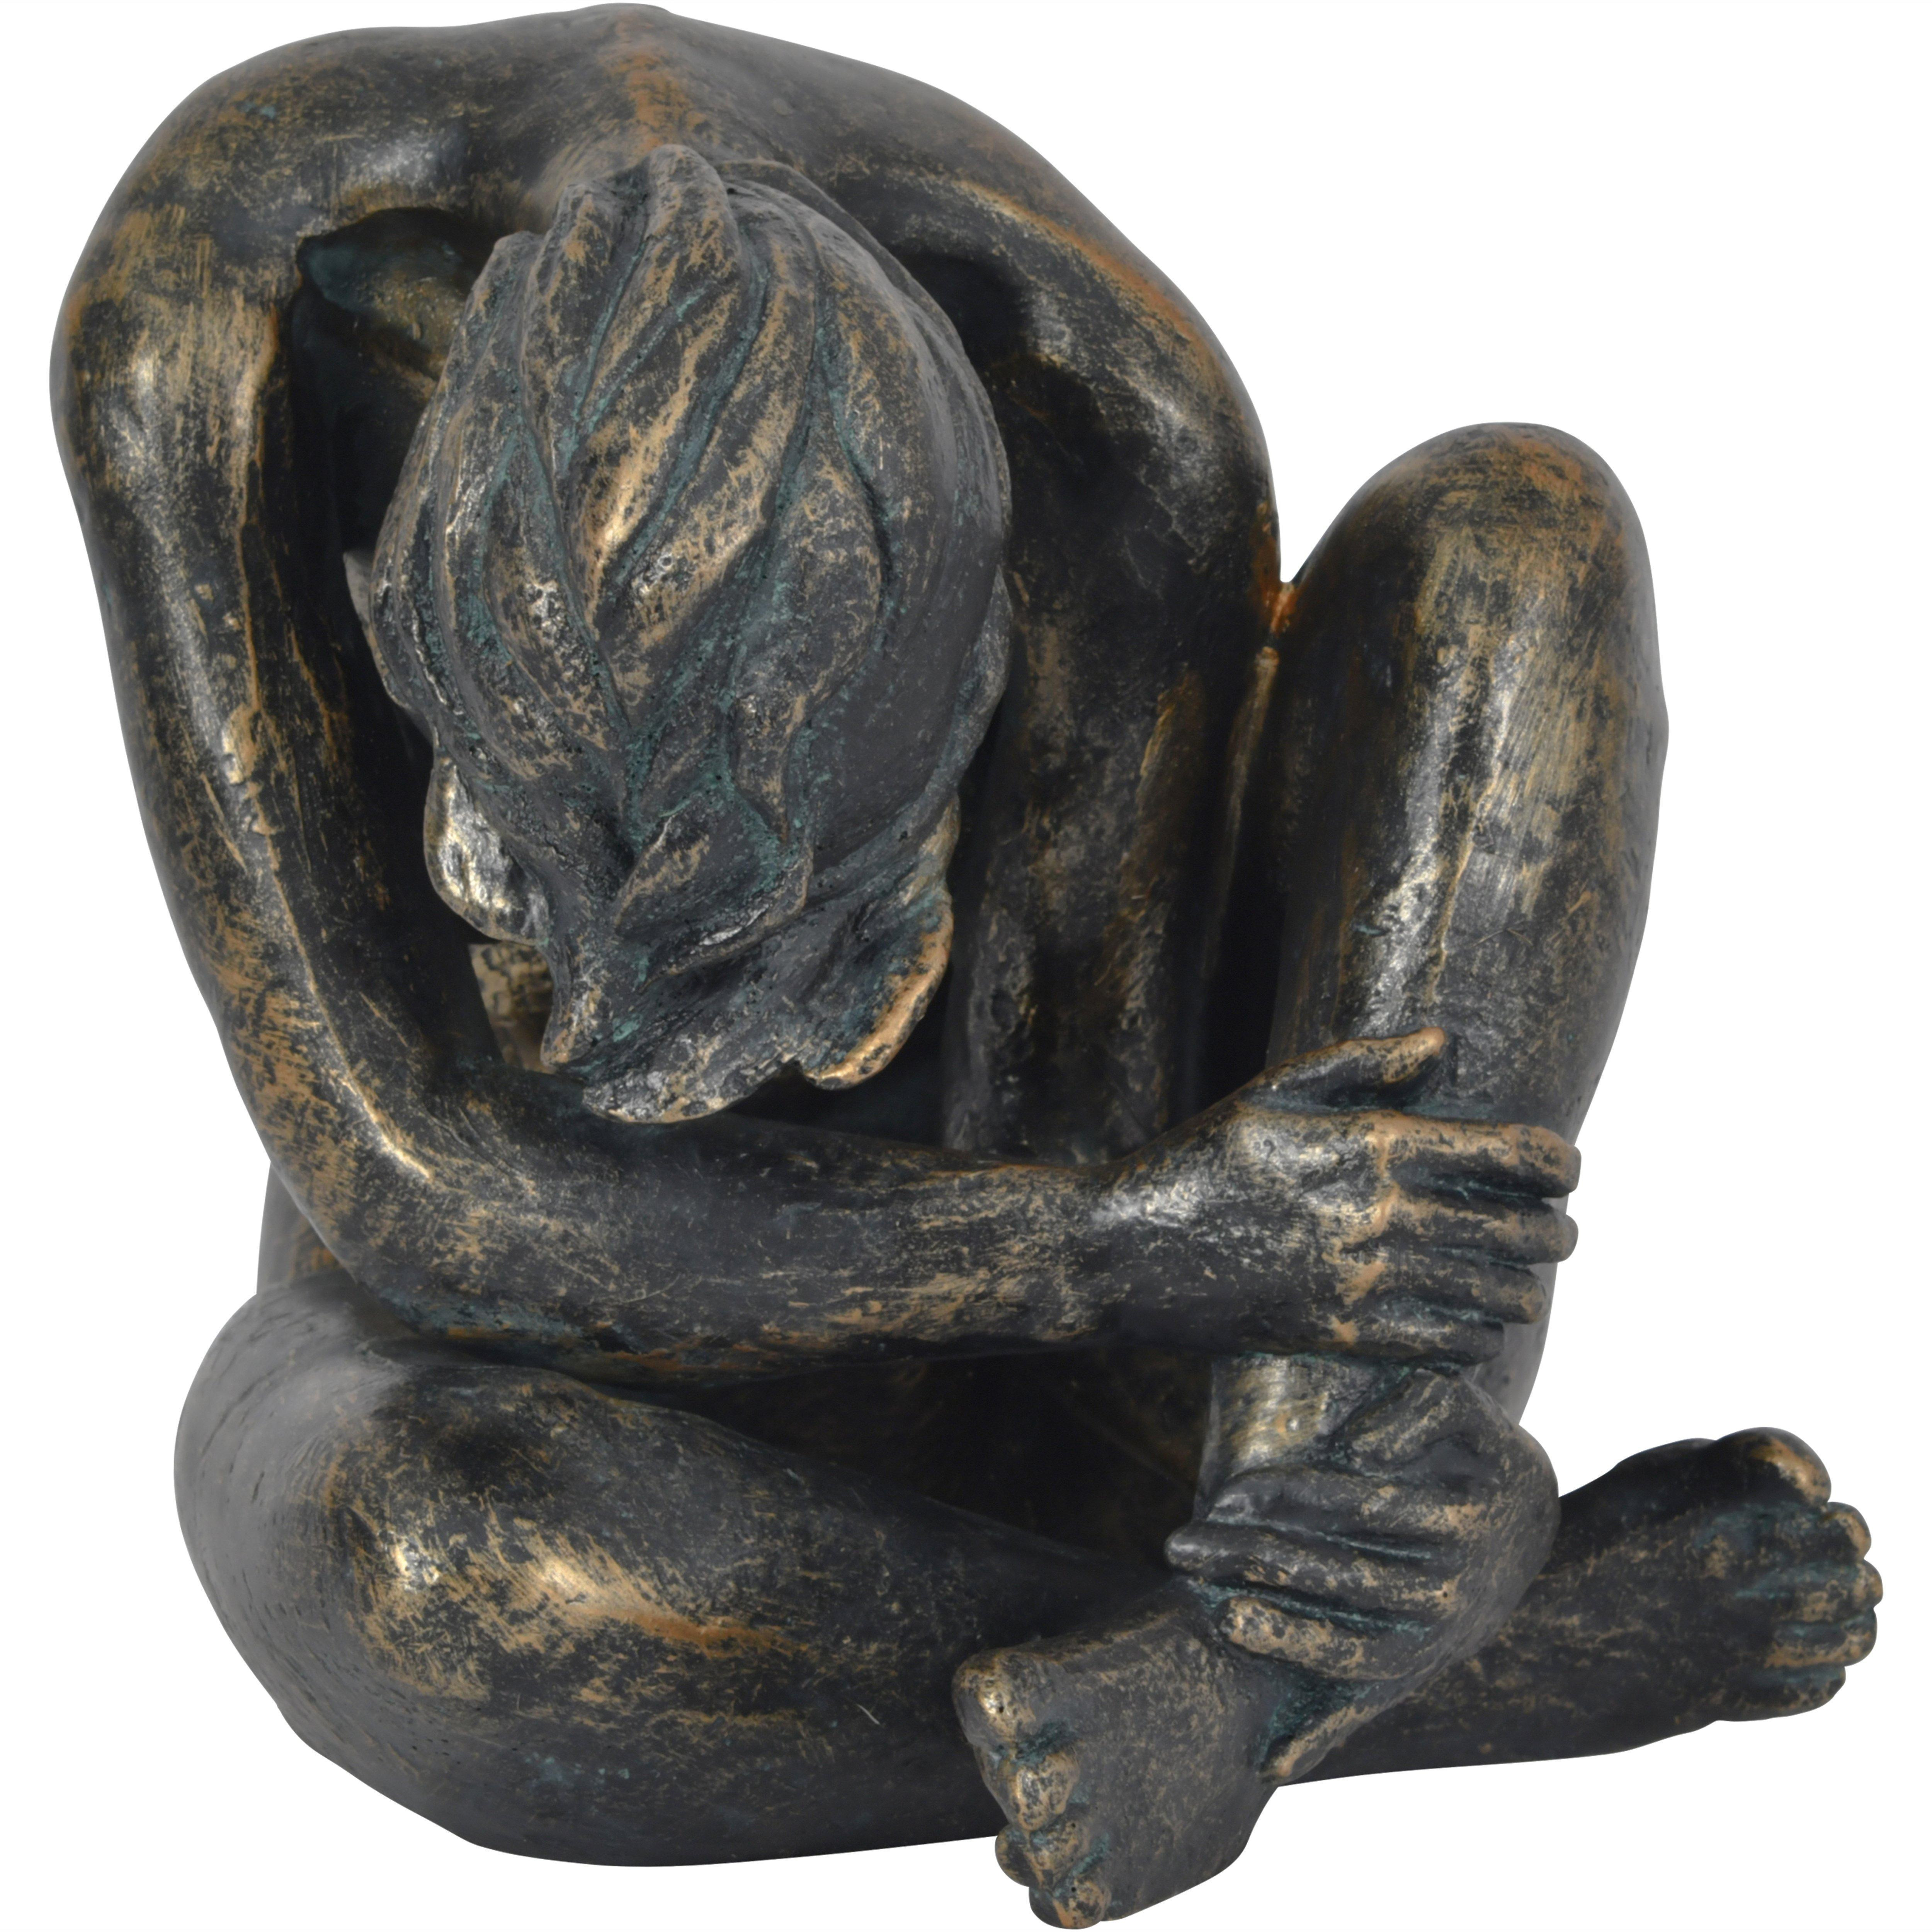 Trish Sitting Sculpture - image 1